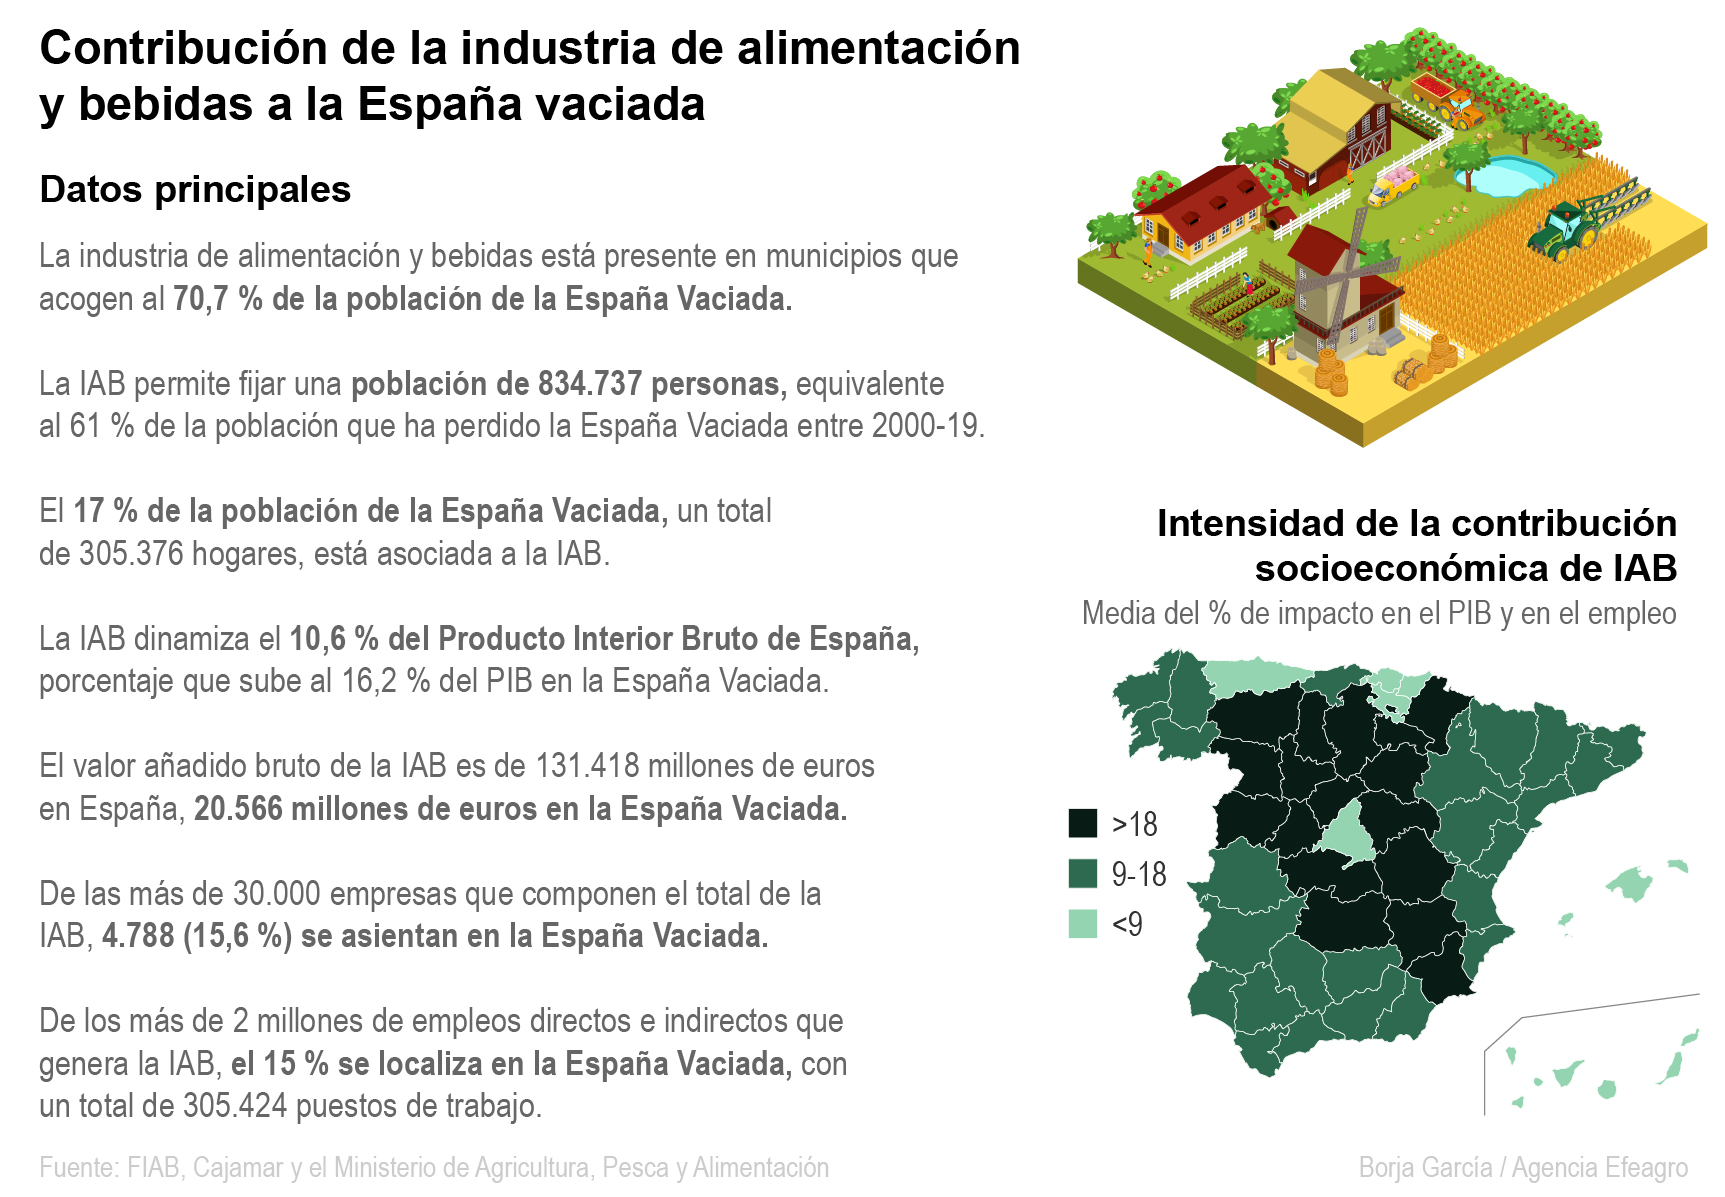 Contribución de la industria de alimentación y bebidas (IAB) en la España vaciada. Efeagro/Borja García